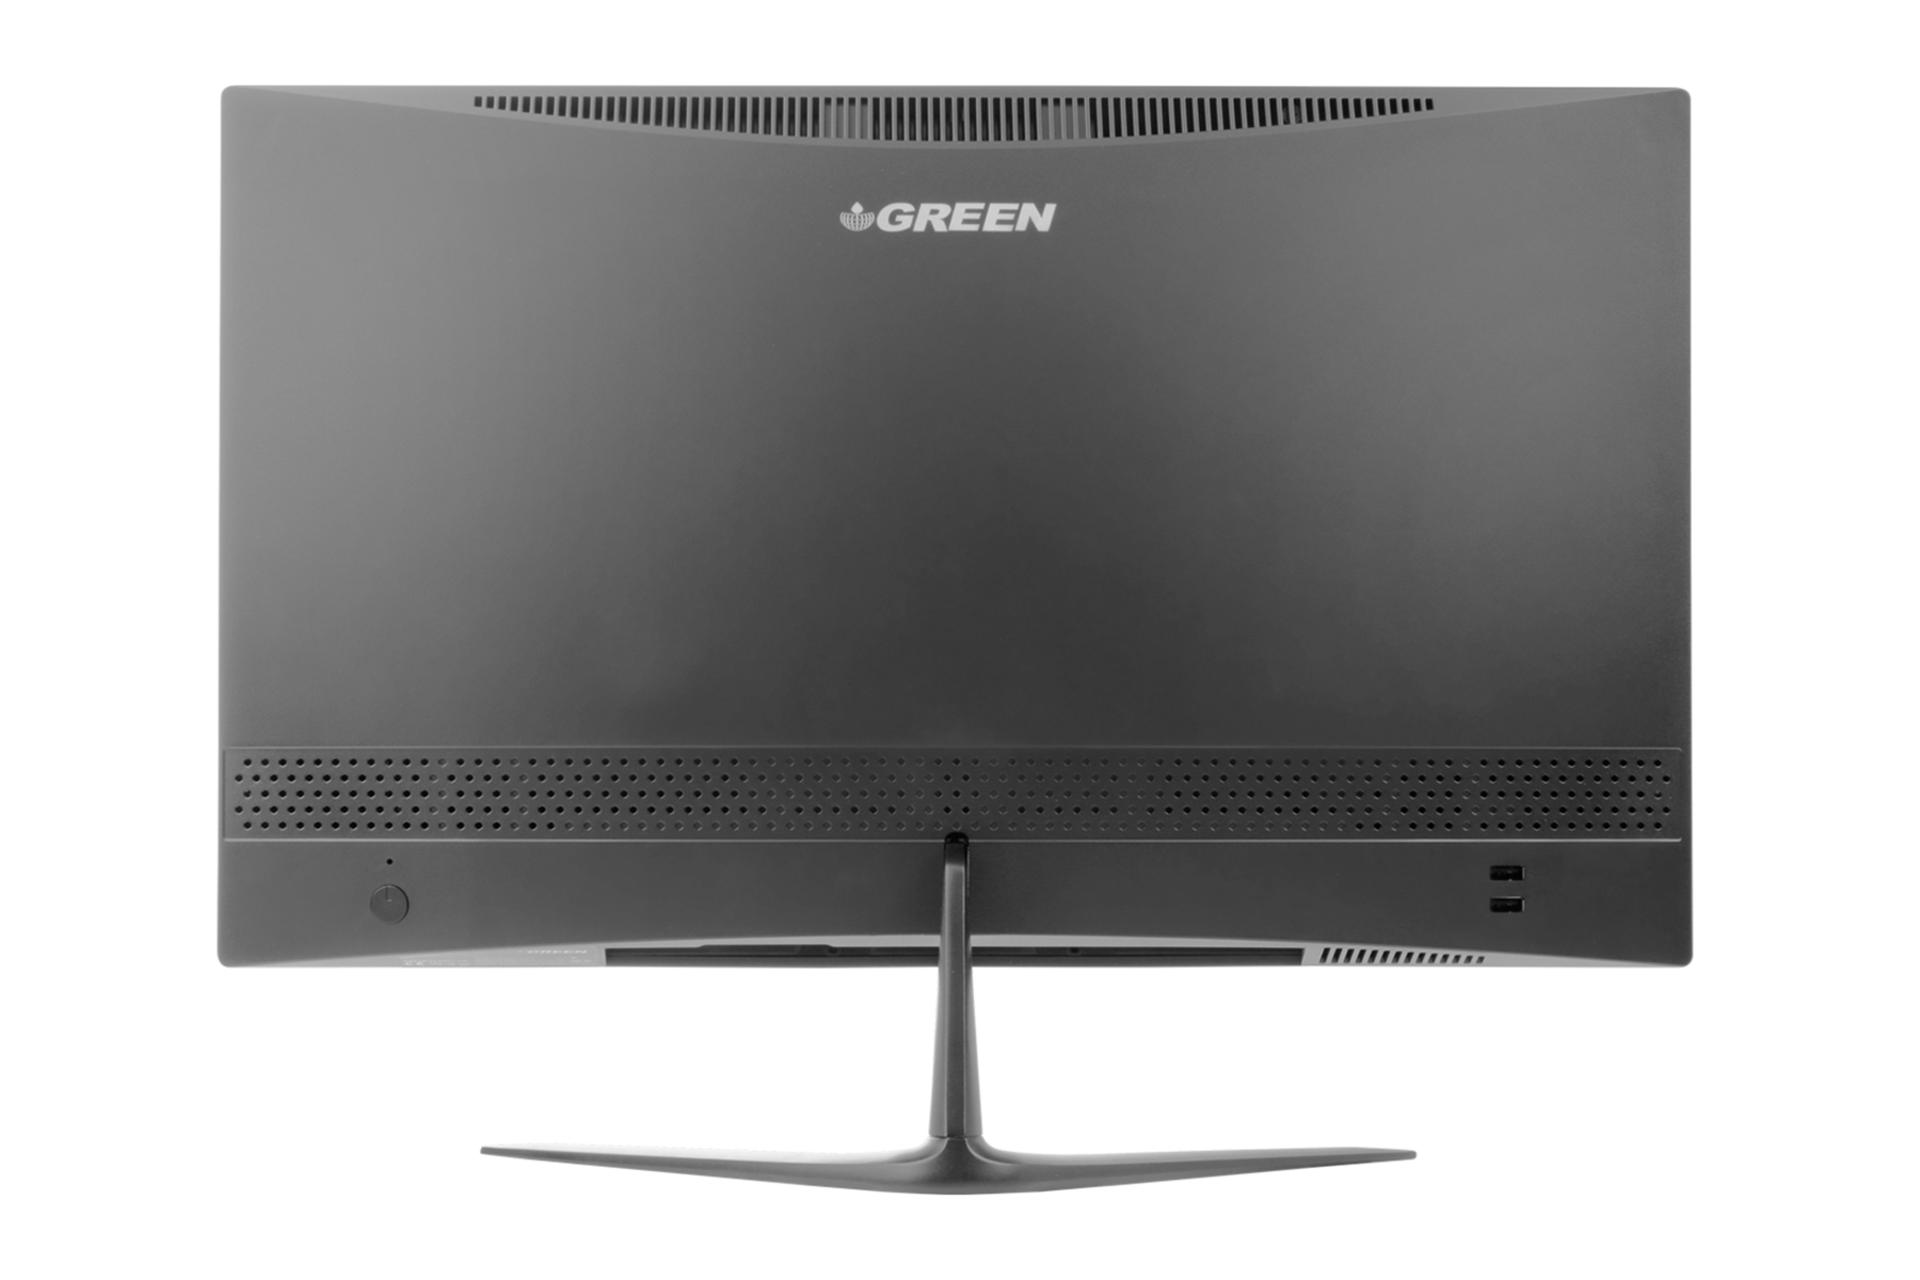 نمای پنل پشت کامپیوتر همه کاره GX622 گرین با نمایش لوگو، درگاه ها و منافذ عبور هوا رنگ مشکی